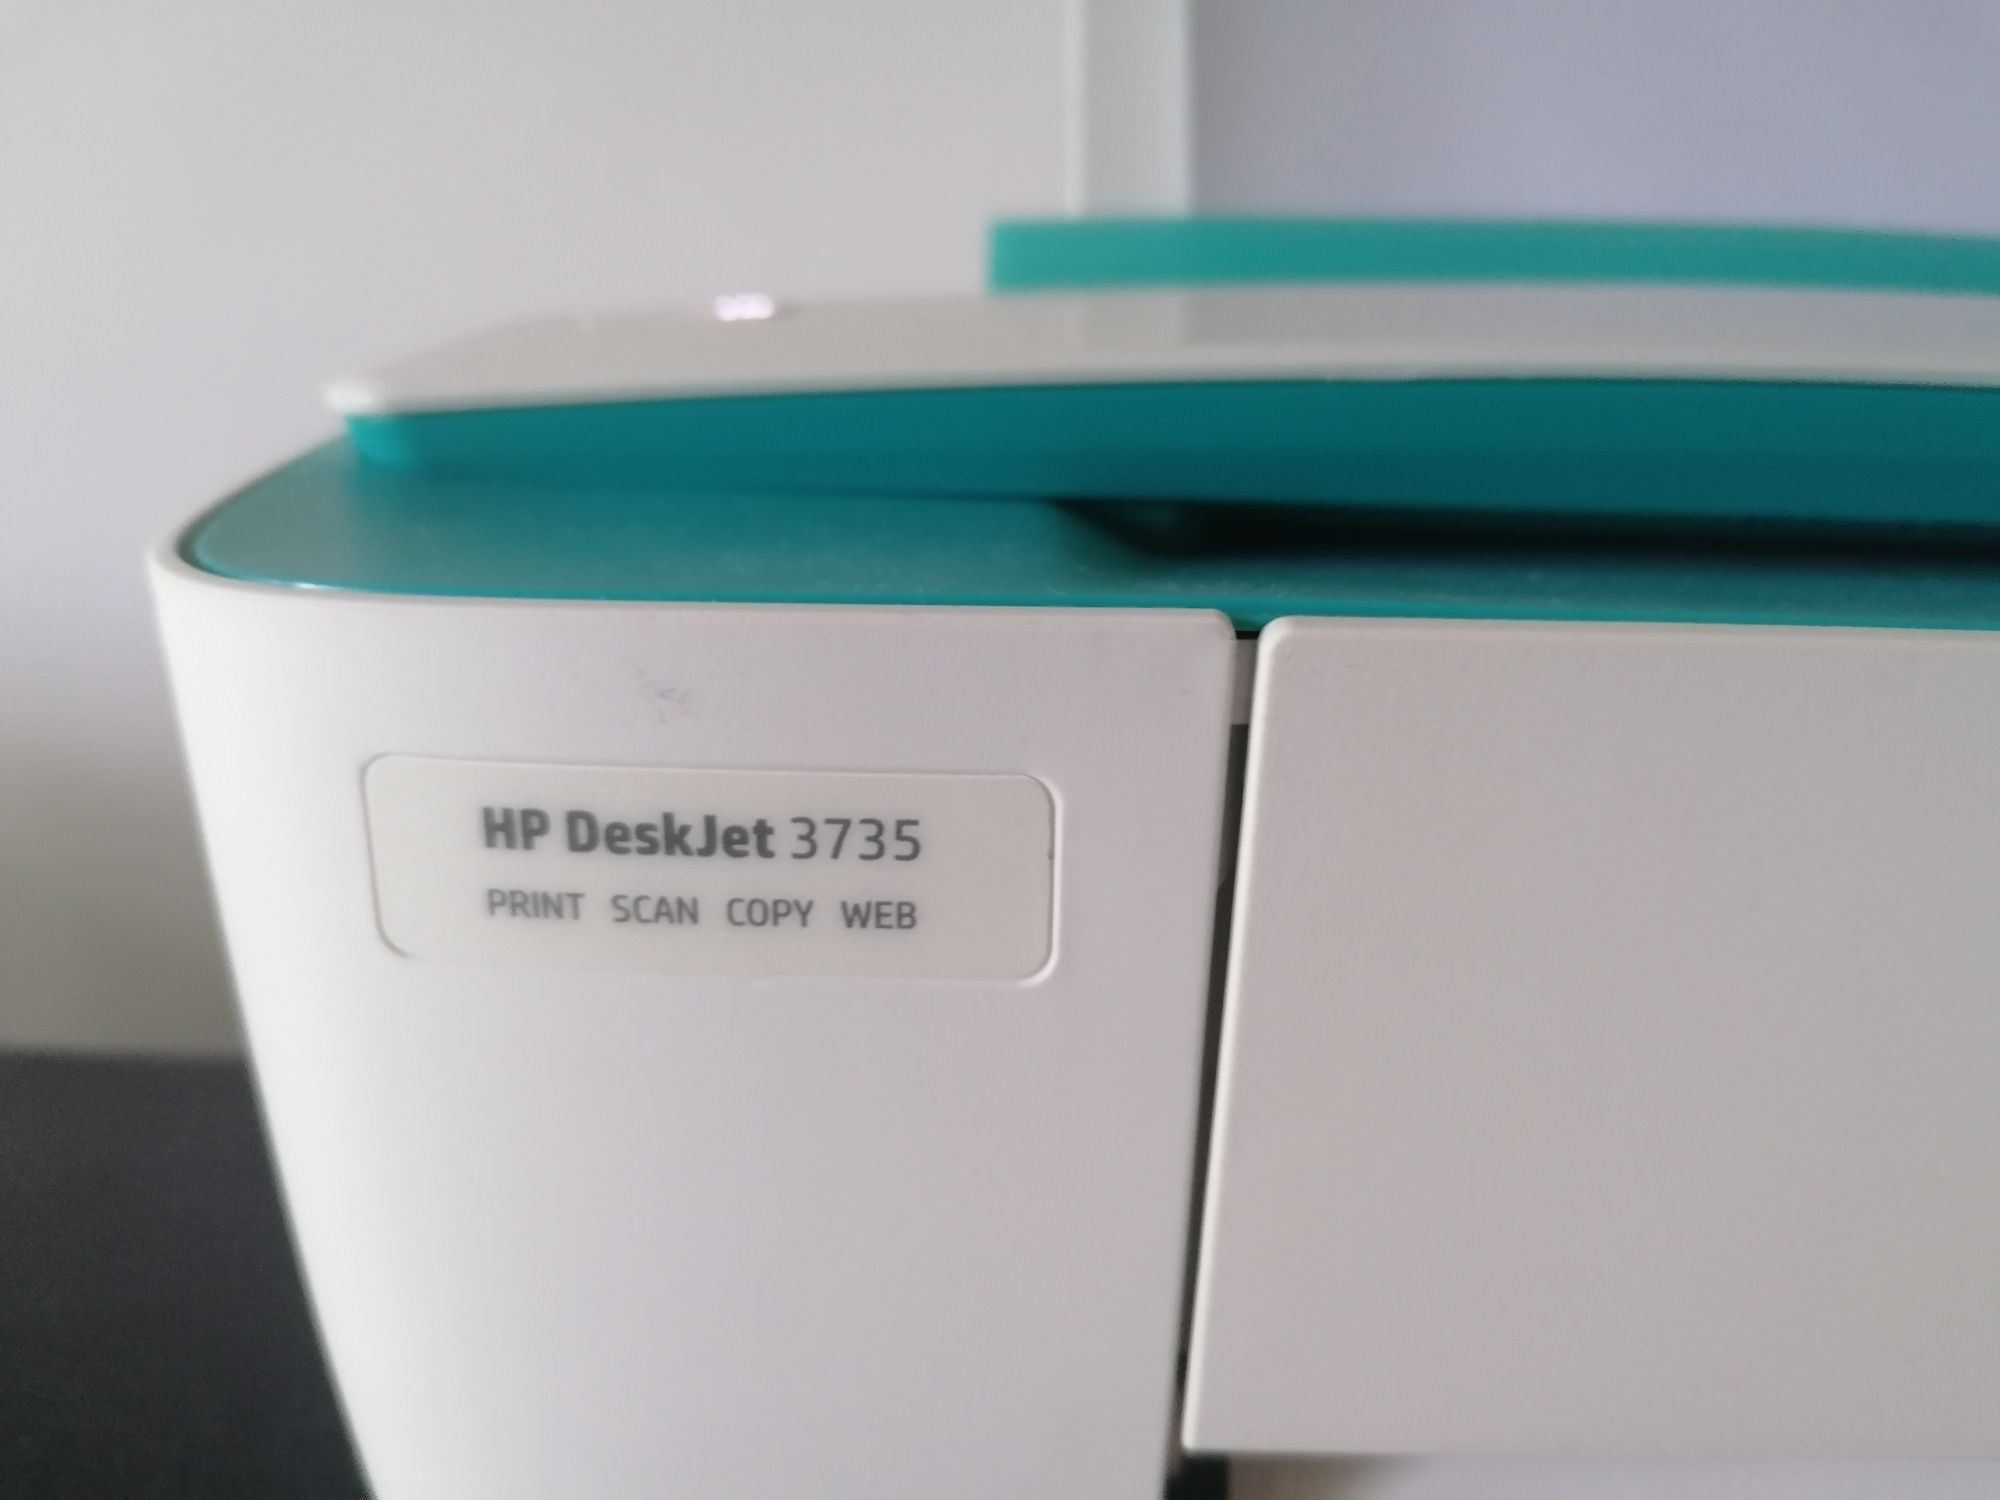 Impressora HP scan copy compacta Wireless/sem fio e USB usada estimada